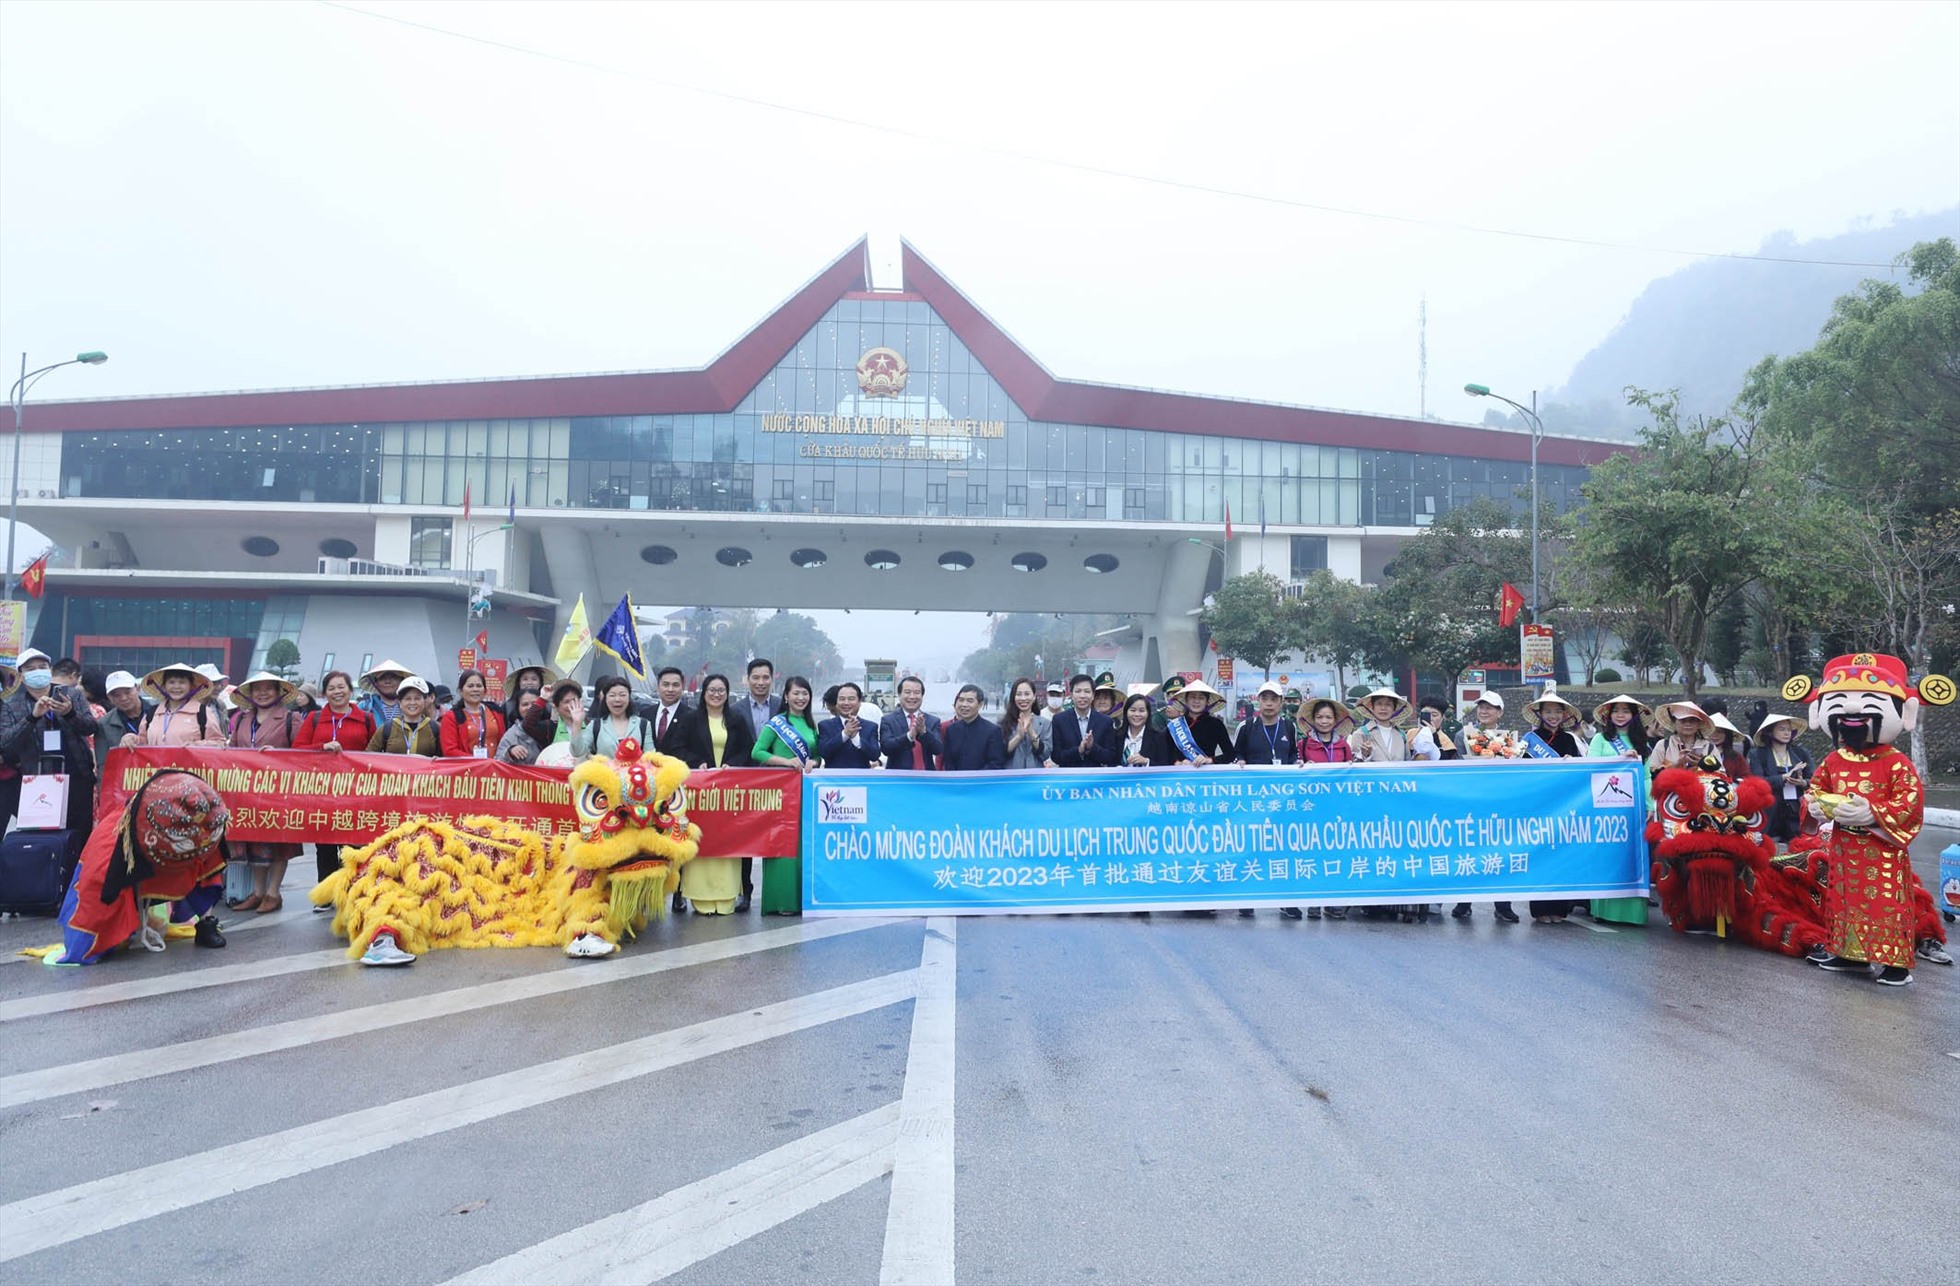 Đoàn khách du lịch Trung Quốc đầu tiên năm 2023 với số lượng 124 người sang Việt Nam qua Cửa khẩu quốc tế Hữu Nghị chụp ảnh chung với đoàn đón của tỉnh Lạng Sơn và Tổng cục Du lịch Việt Nam.